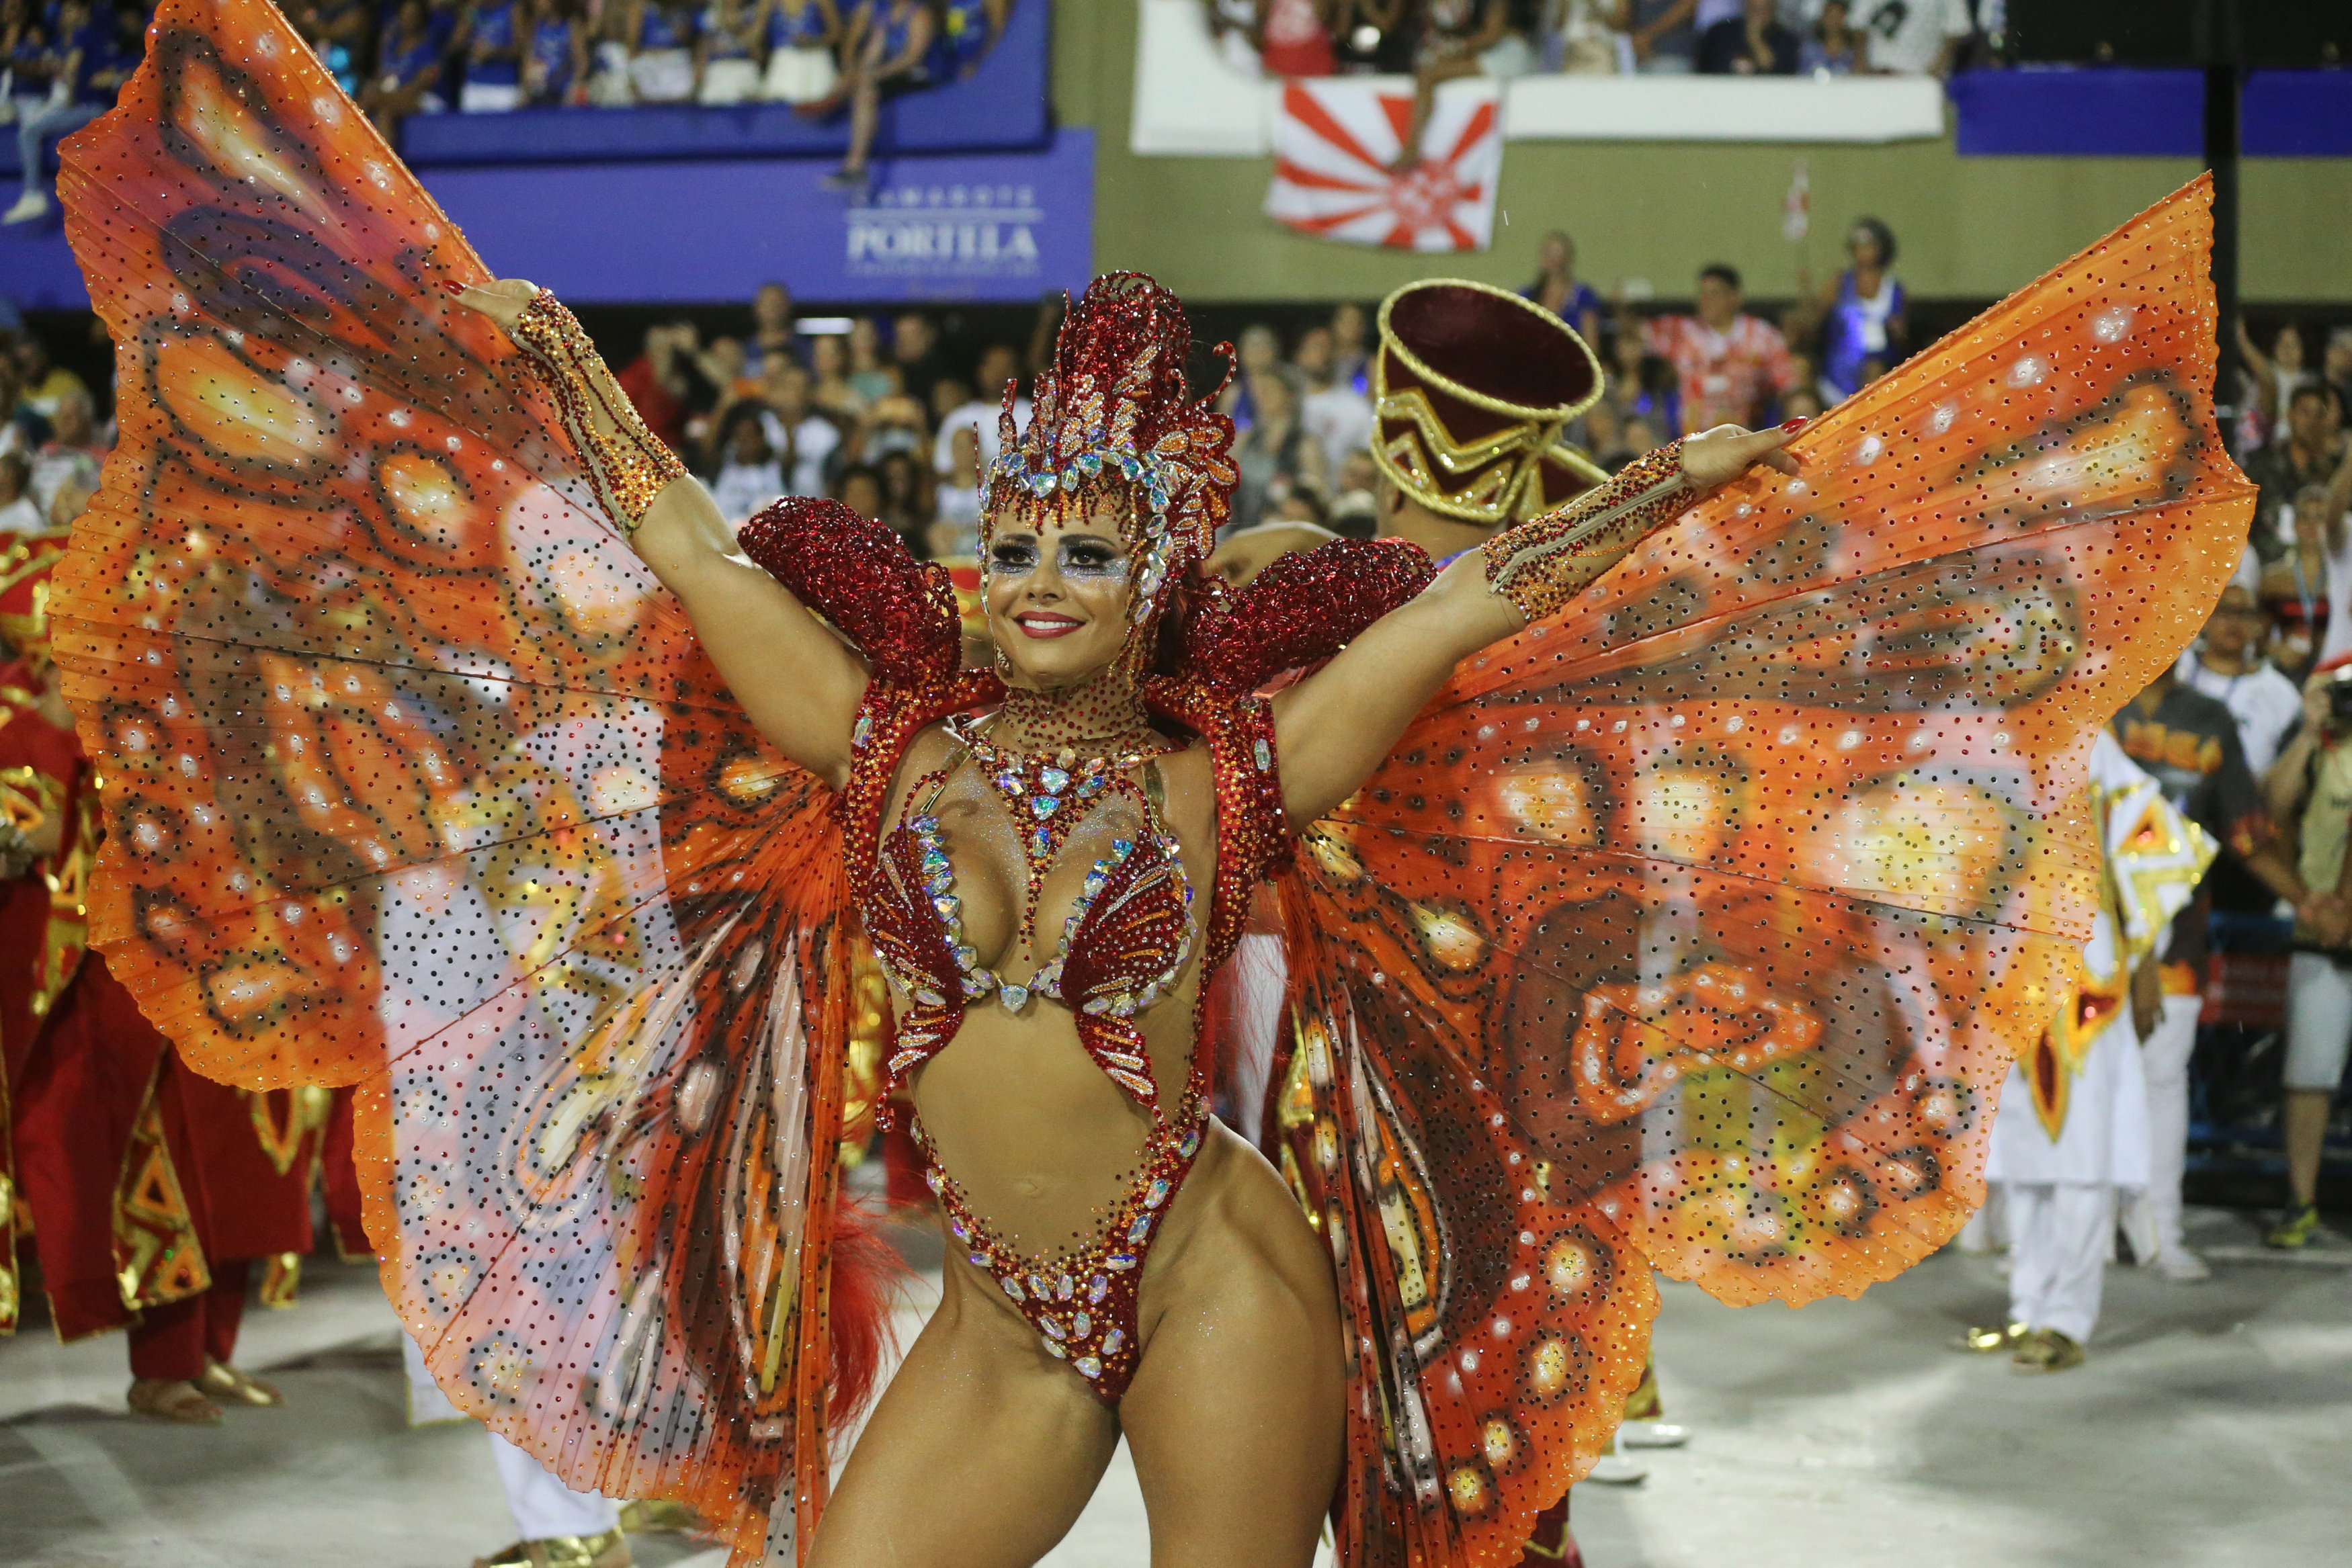 Karnaval. Карнавал в Рио-де-Жанейро Бразилия. Самбодром Бразилия танцовщицы. Карнавал Рио (Rio Carnival). Рио-де-Жанейро карнавал костюмы.